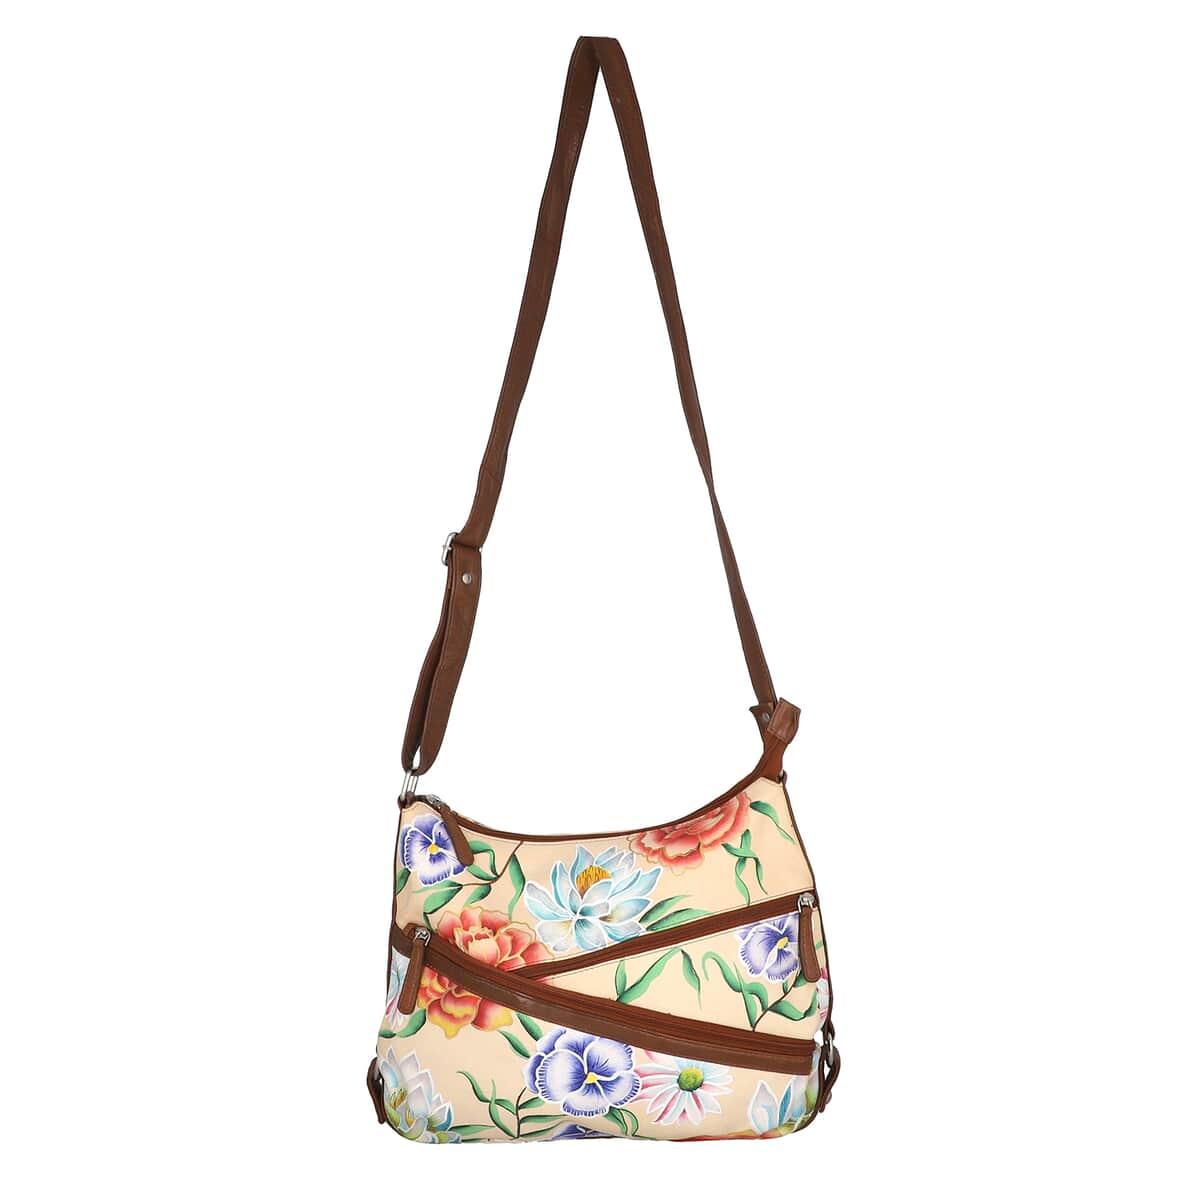 Sukriti Light Brown Floral Pattern Genuine Leather Hobo Crossbody Bag with Adjustable Shoulder Strap image number 6